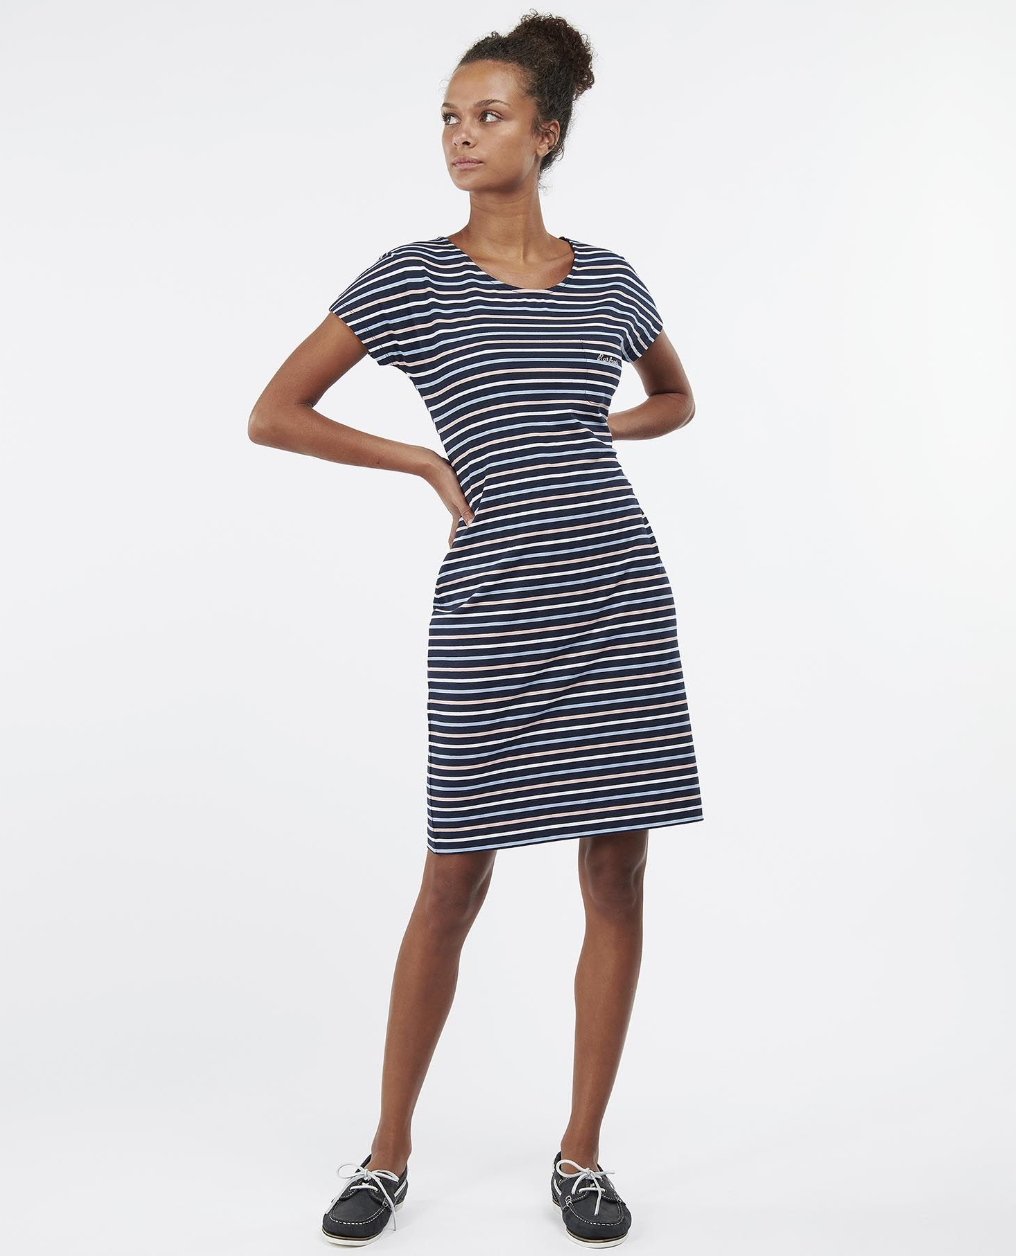 Barbour Harewood Stripe Dress on Sale | website.jkuat.ac.ke